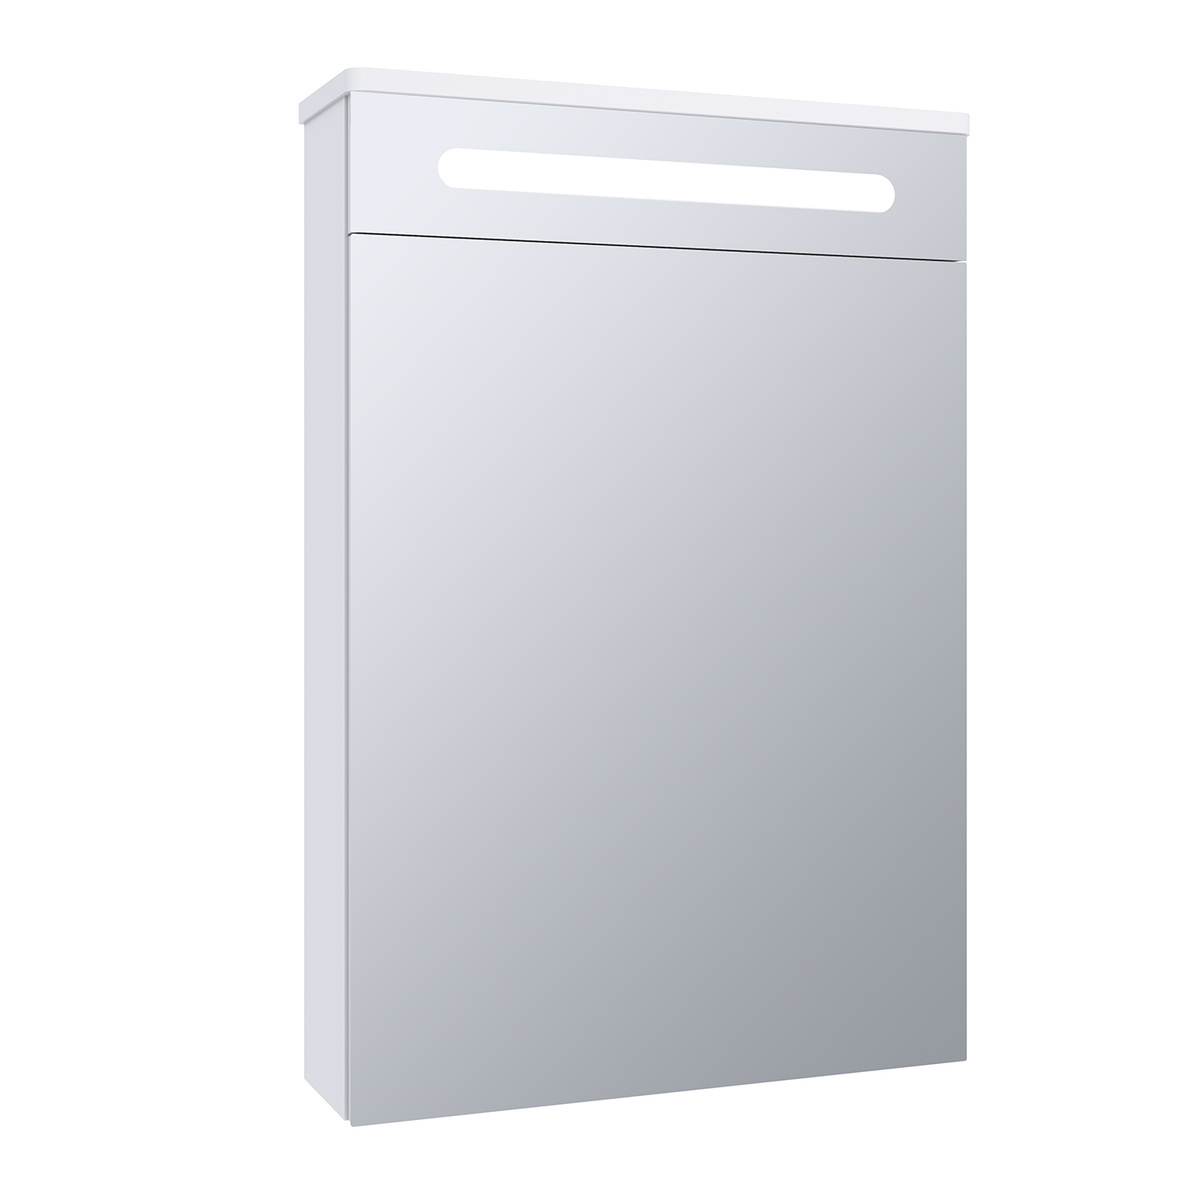 Зеркало шкаф для ванной с подсветкой Runo Парма 50 Текст при отключенной в браузере загрузке изображений